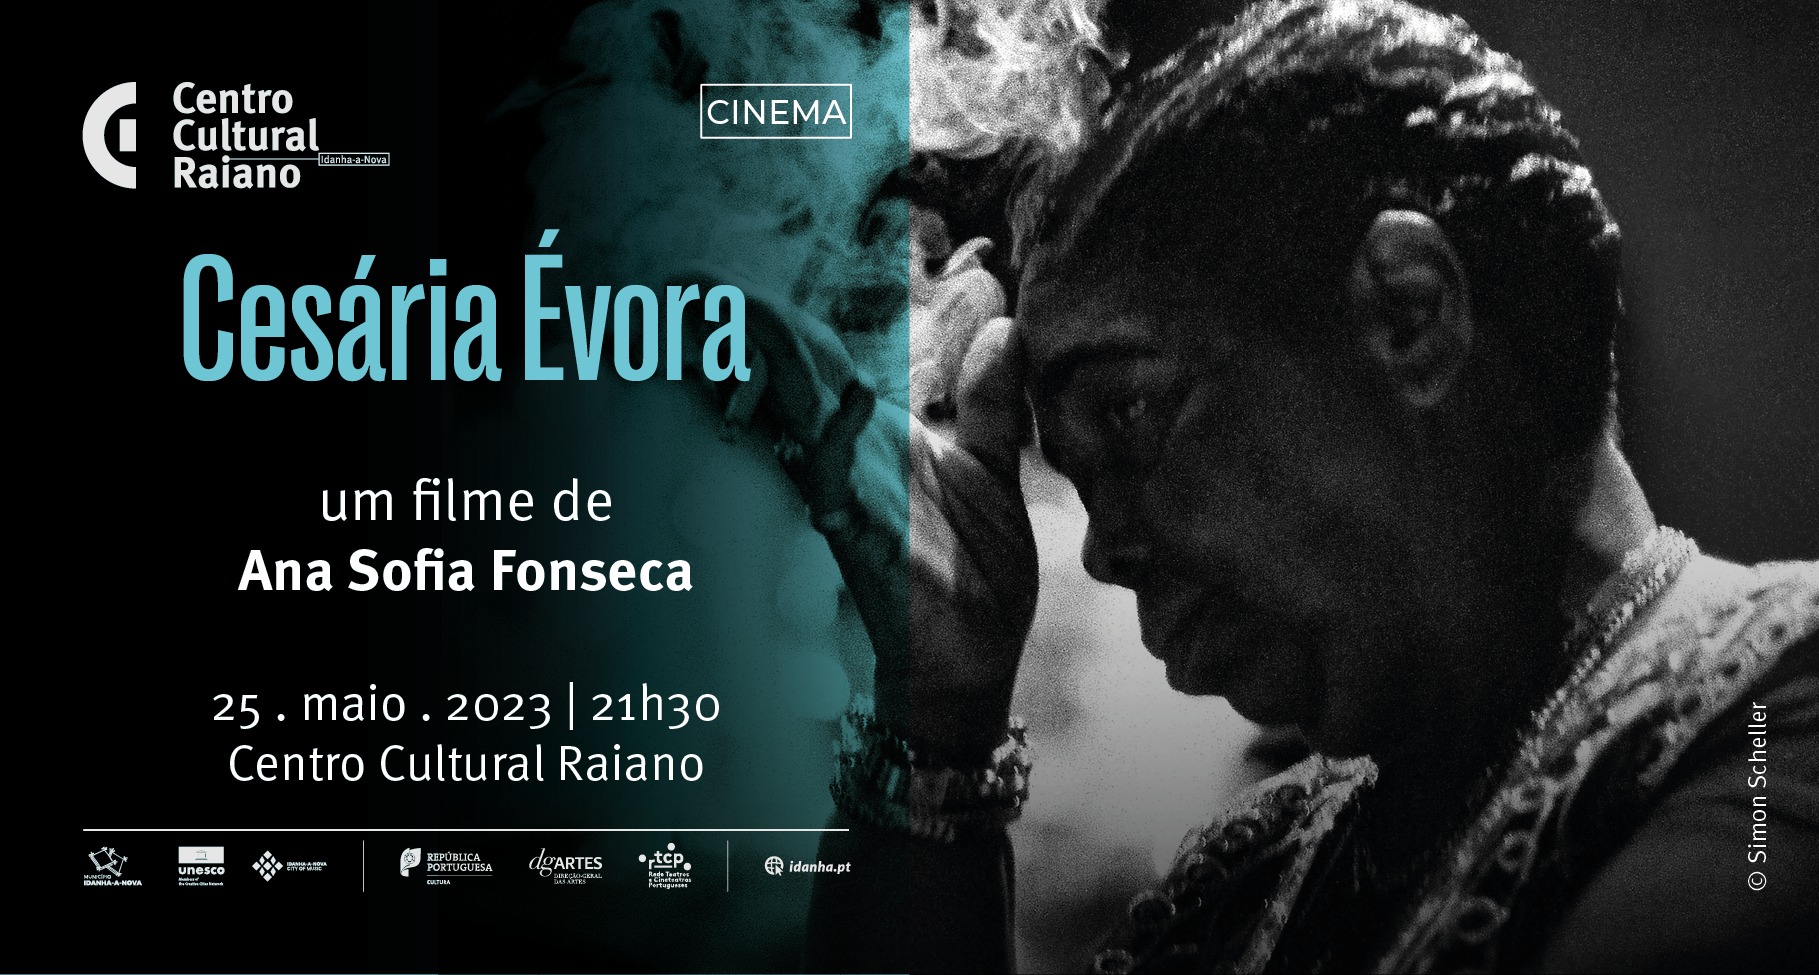 «Cesária Évora» um filme de Ana Sofia Fonseca